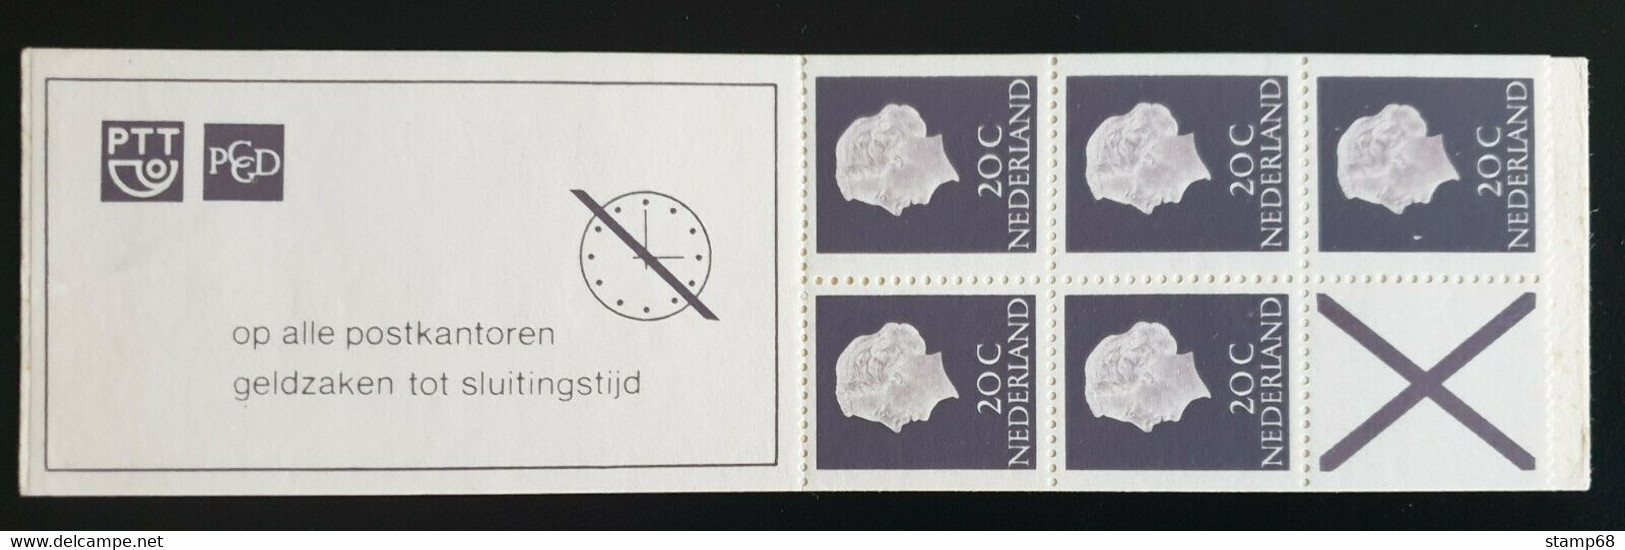 Nederland NVPH PB6eF Smal Kruis Postzegelboekje 1968 MNH Postfris - Postzegelboekjes En Roltandingzegels